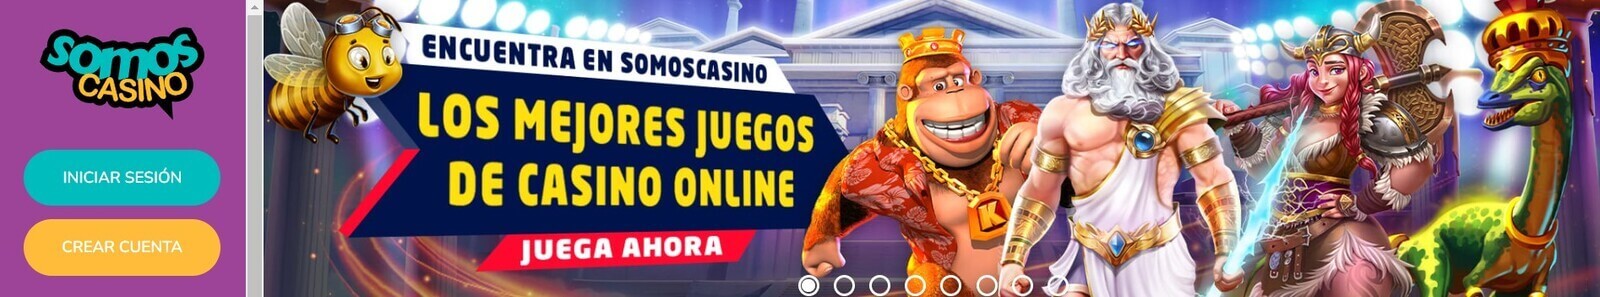 Página web de Somos Casino online para iPhone